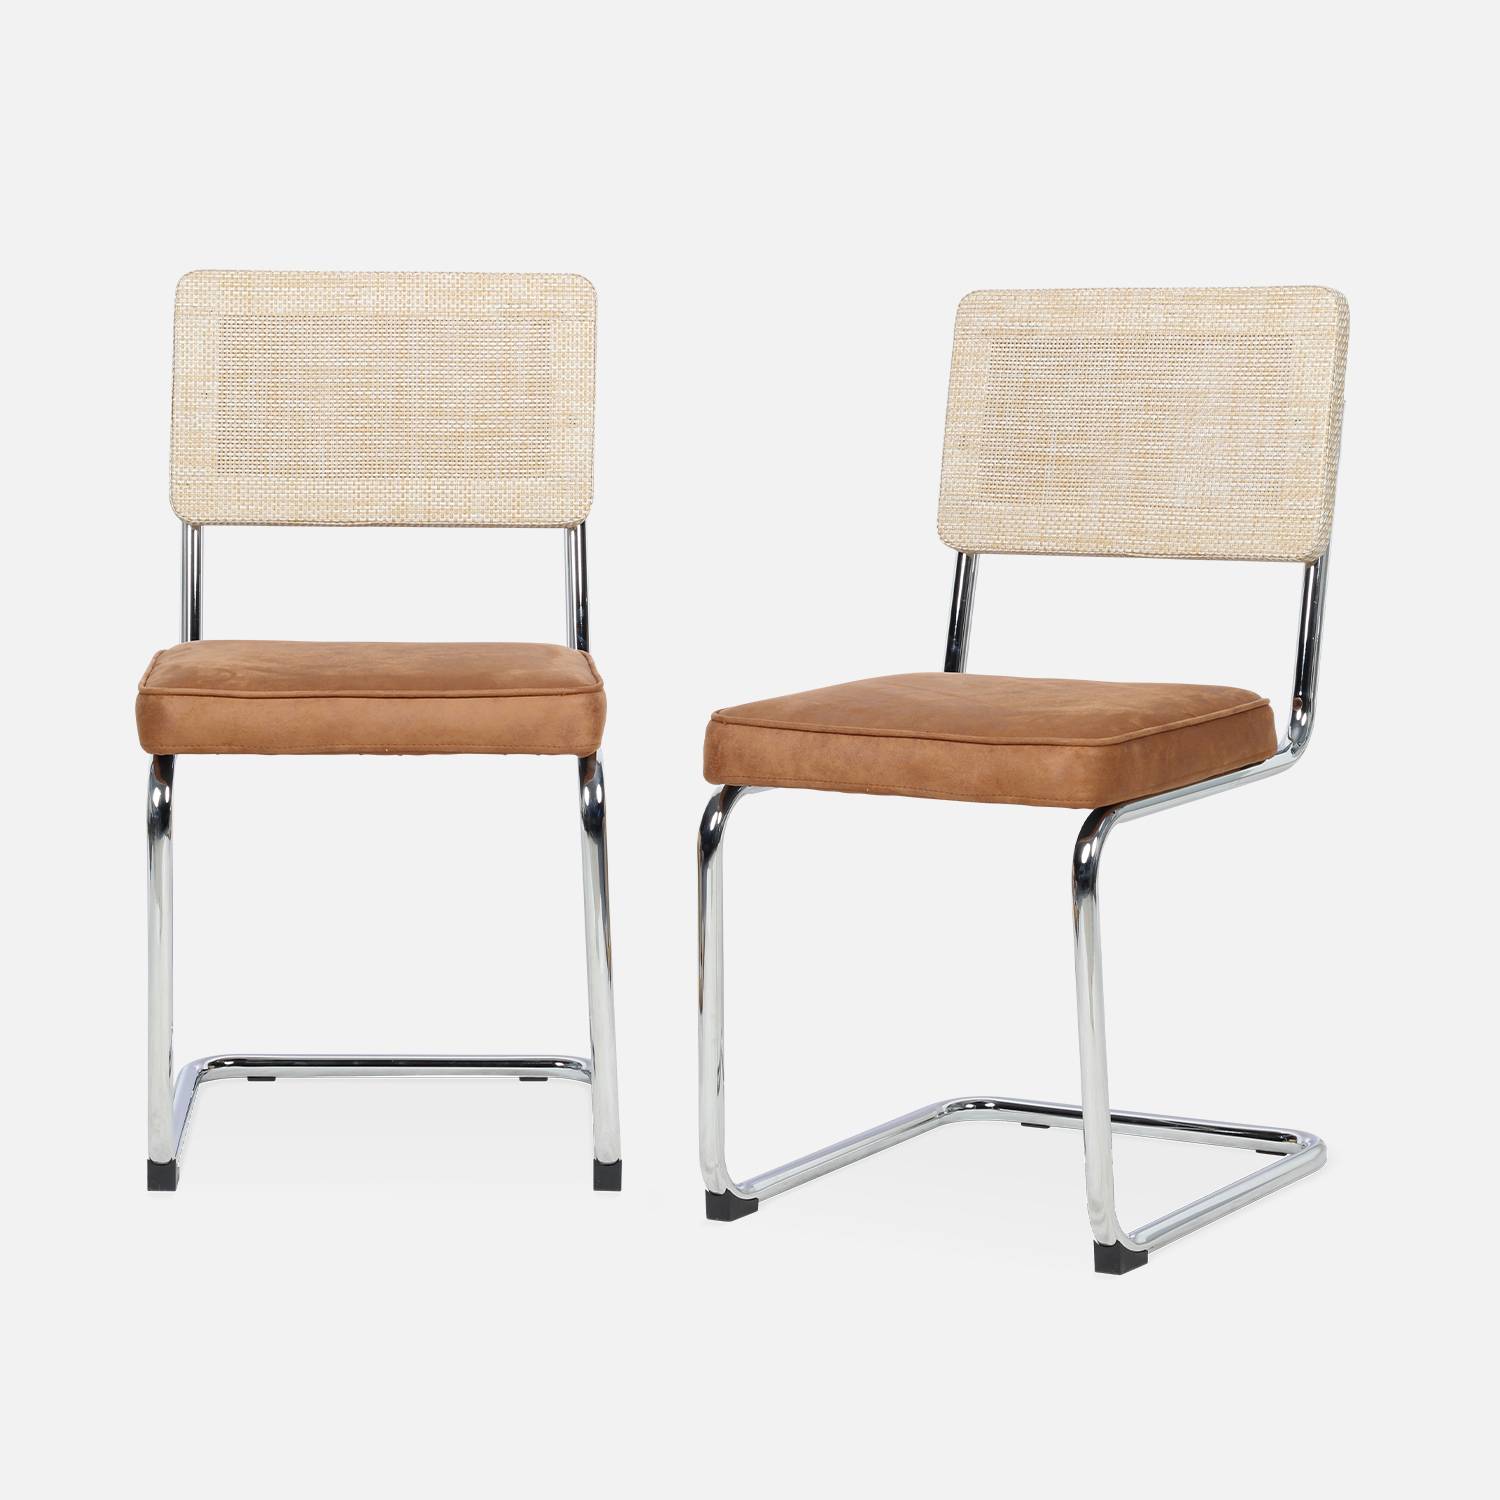 2 sillas cantilever - Maja - tela marrón claro y resina efecto ratán, 46 x 54,5 x 84,5cm   Photo4